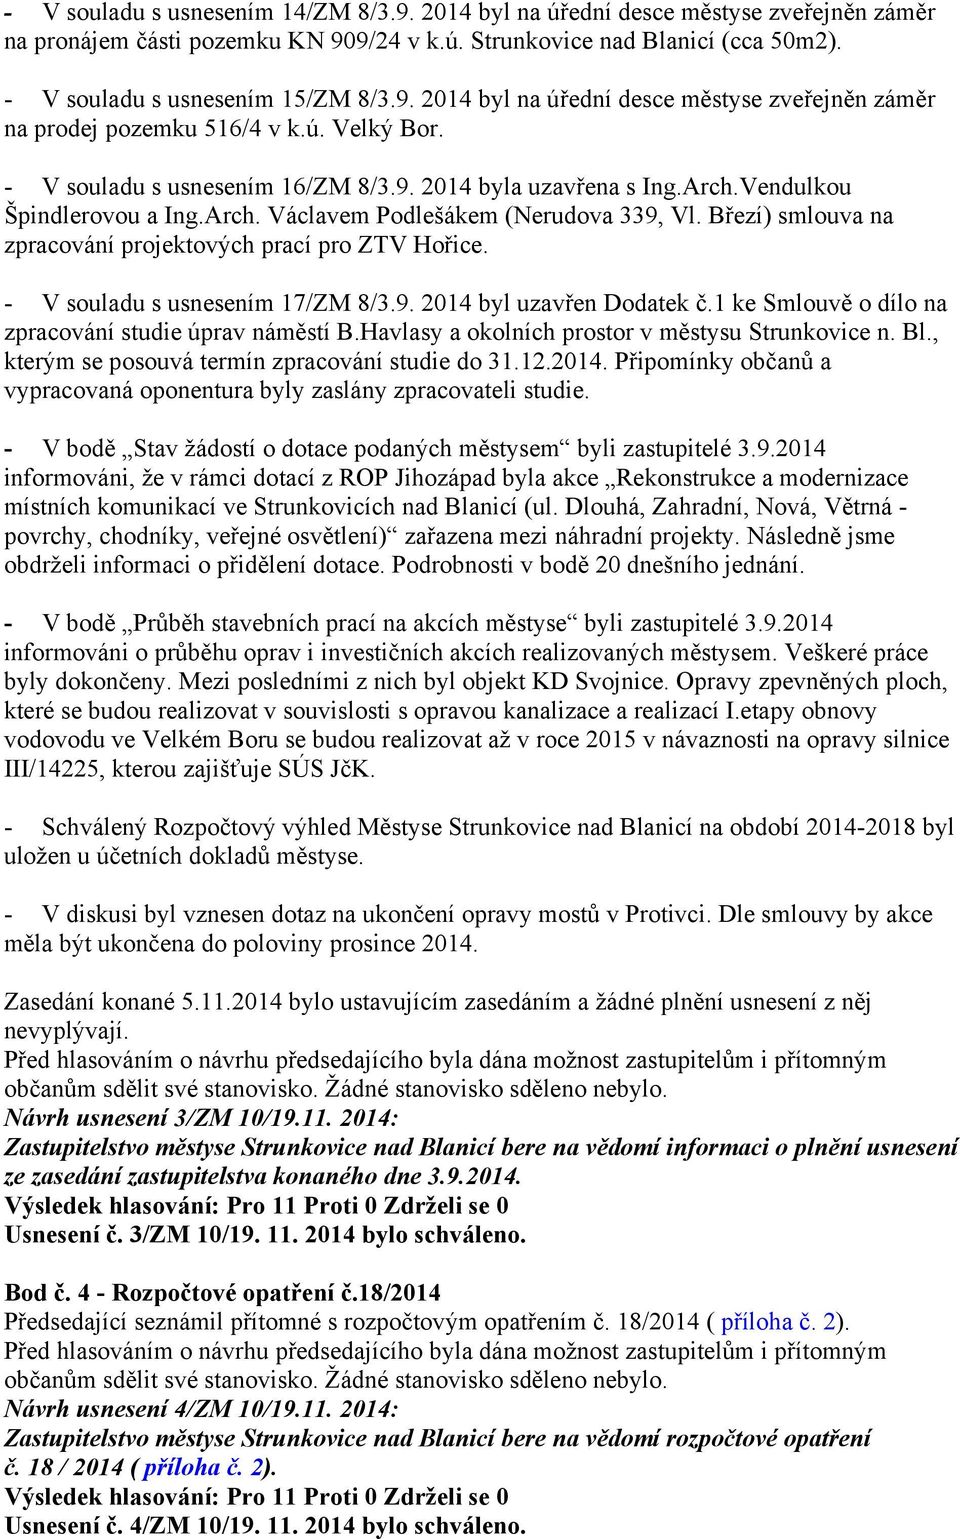 Březí) smlouva na zpracování projektových prací pro ZTV Hořice. - V souladu s usnesením 17/ZM 8/3.9. 2014 byl uzavřen Dodatek č.1 ke Smlouvě o dílo na zpracování studie úprav náměstí B.